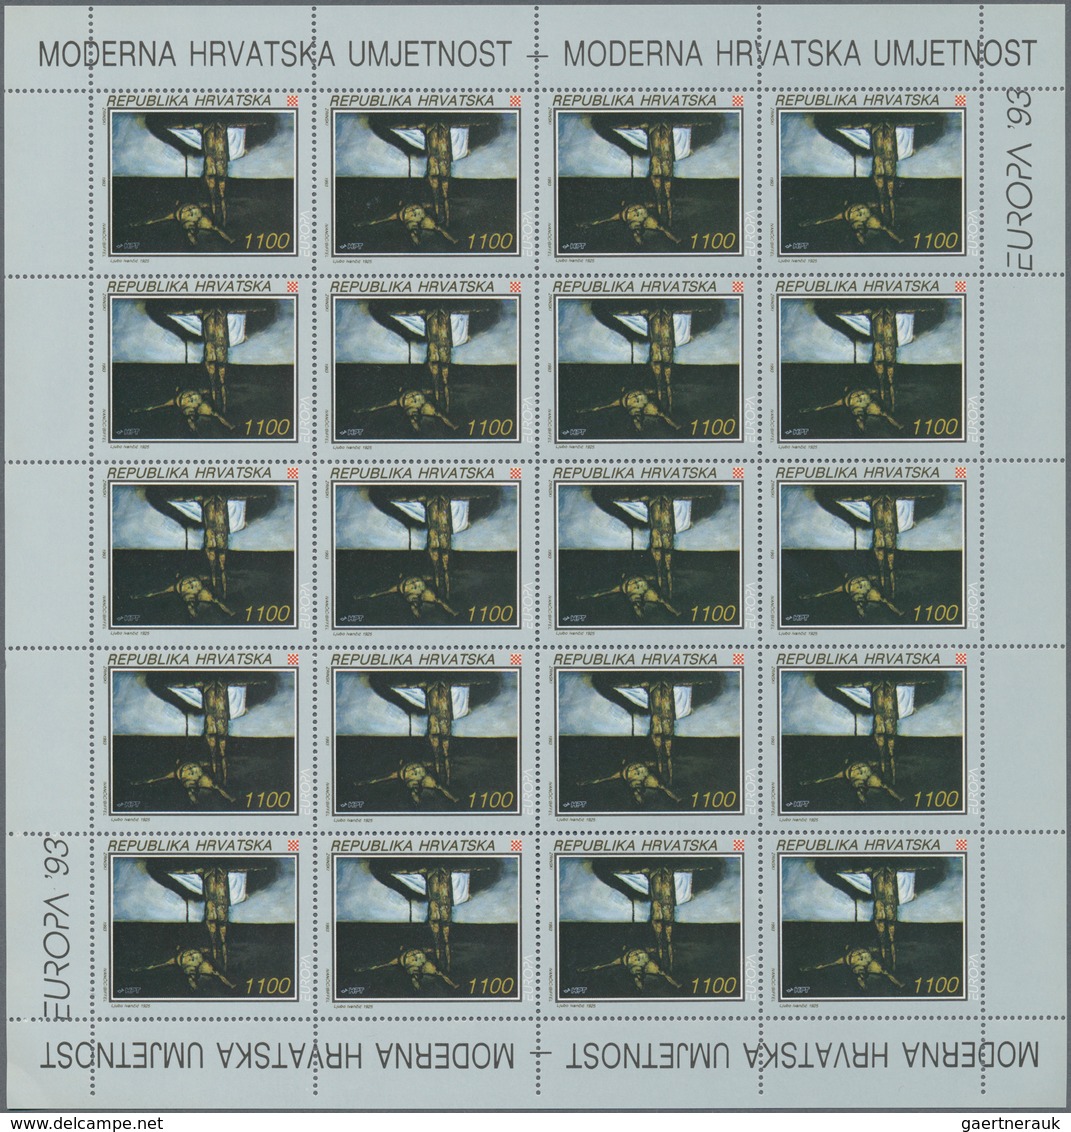 27151 Kroatien: 1993, Europa, 1040 Sets In 65 Sheets Of 16 Stamps Each Issue, Mint Never Hinged. Michel 62 - Kroatien